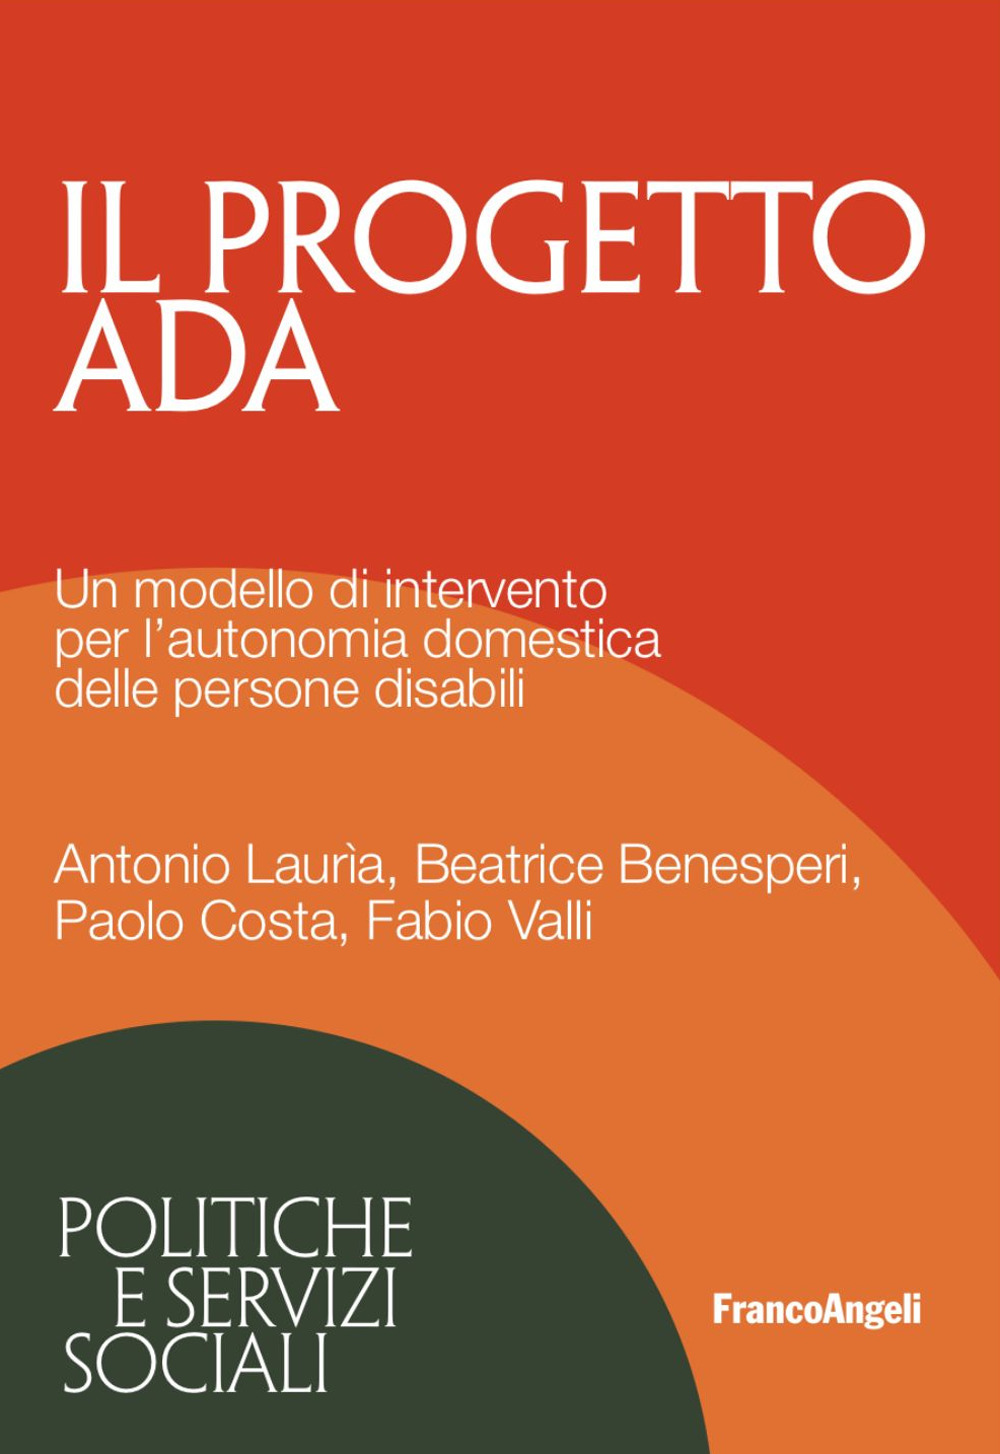 Il progetto ADA. Un modello di intervento per l'autonomia domestica delle persone disabili